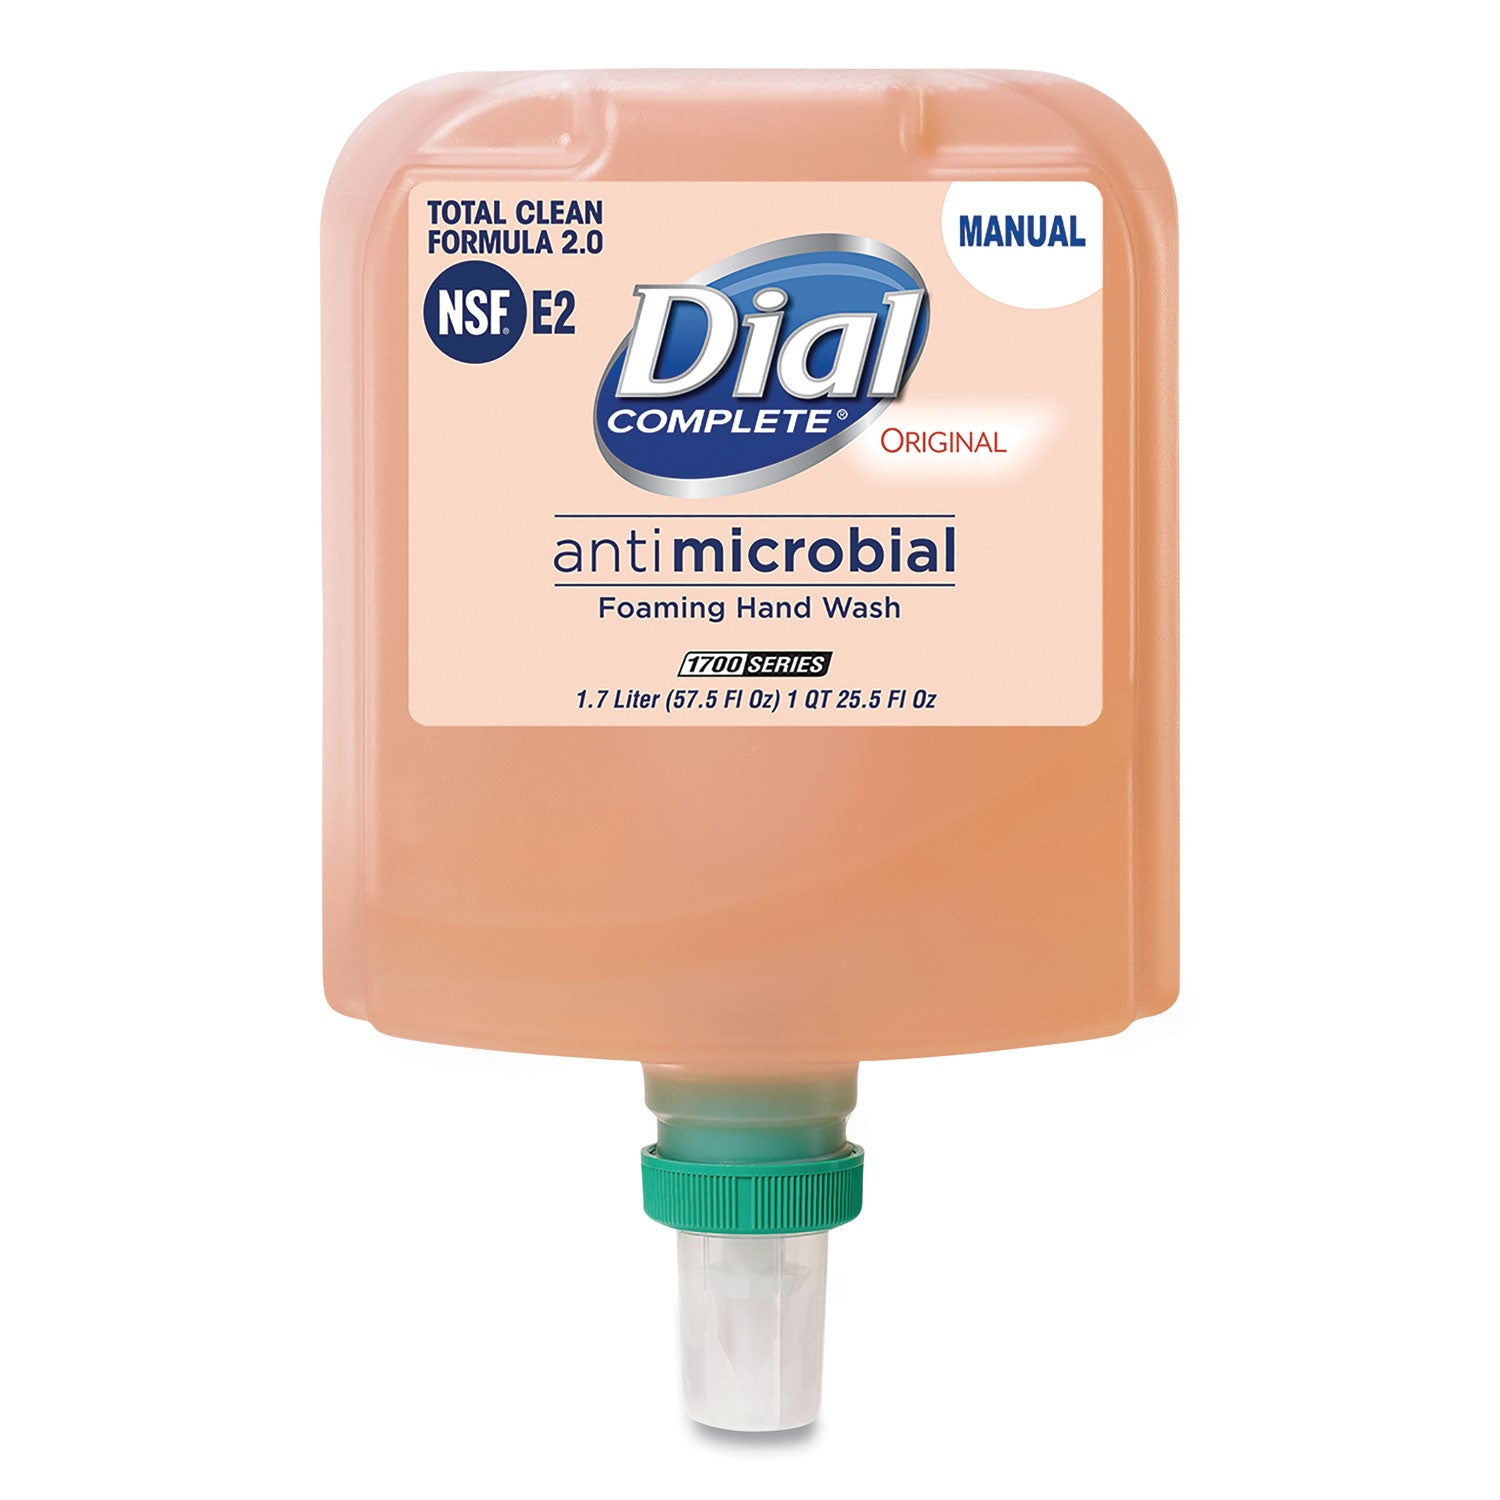 antibacterial-foaming-hand-wash-refill-for-dial-1700-dispenser-original-17-l-3-carton_dia19720 - 1